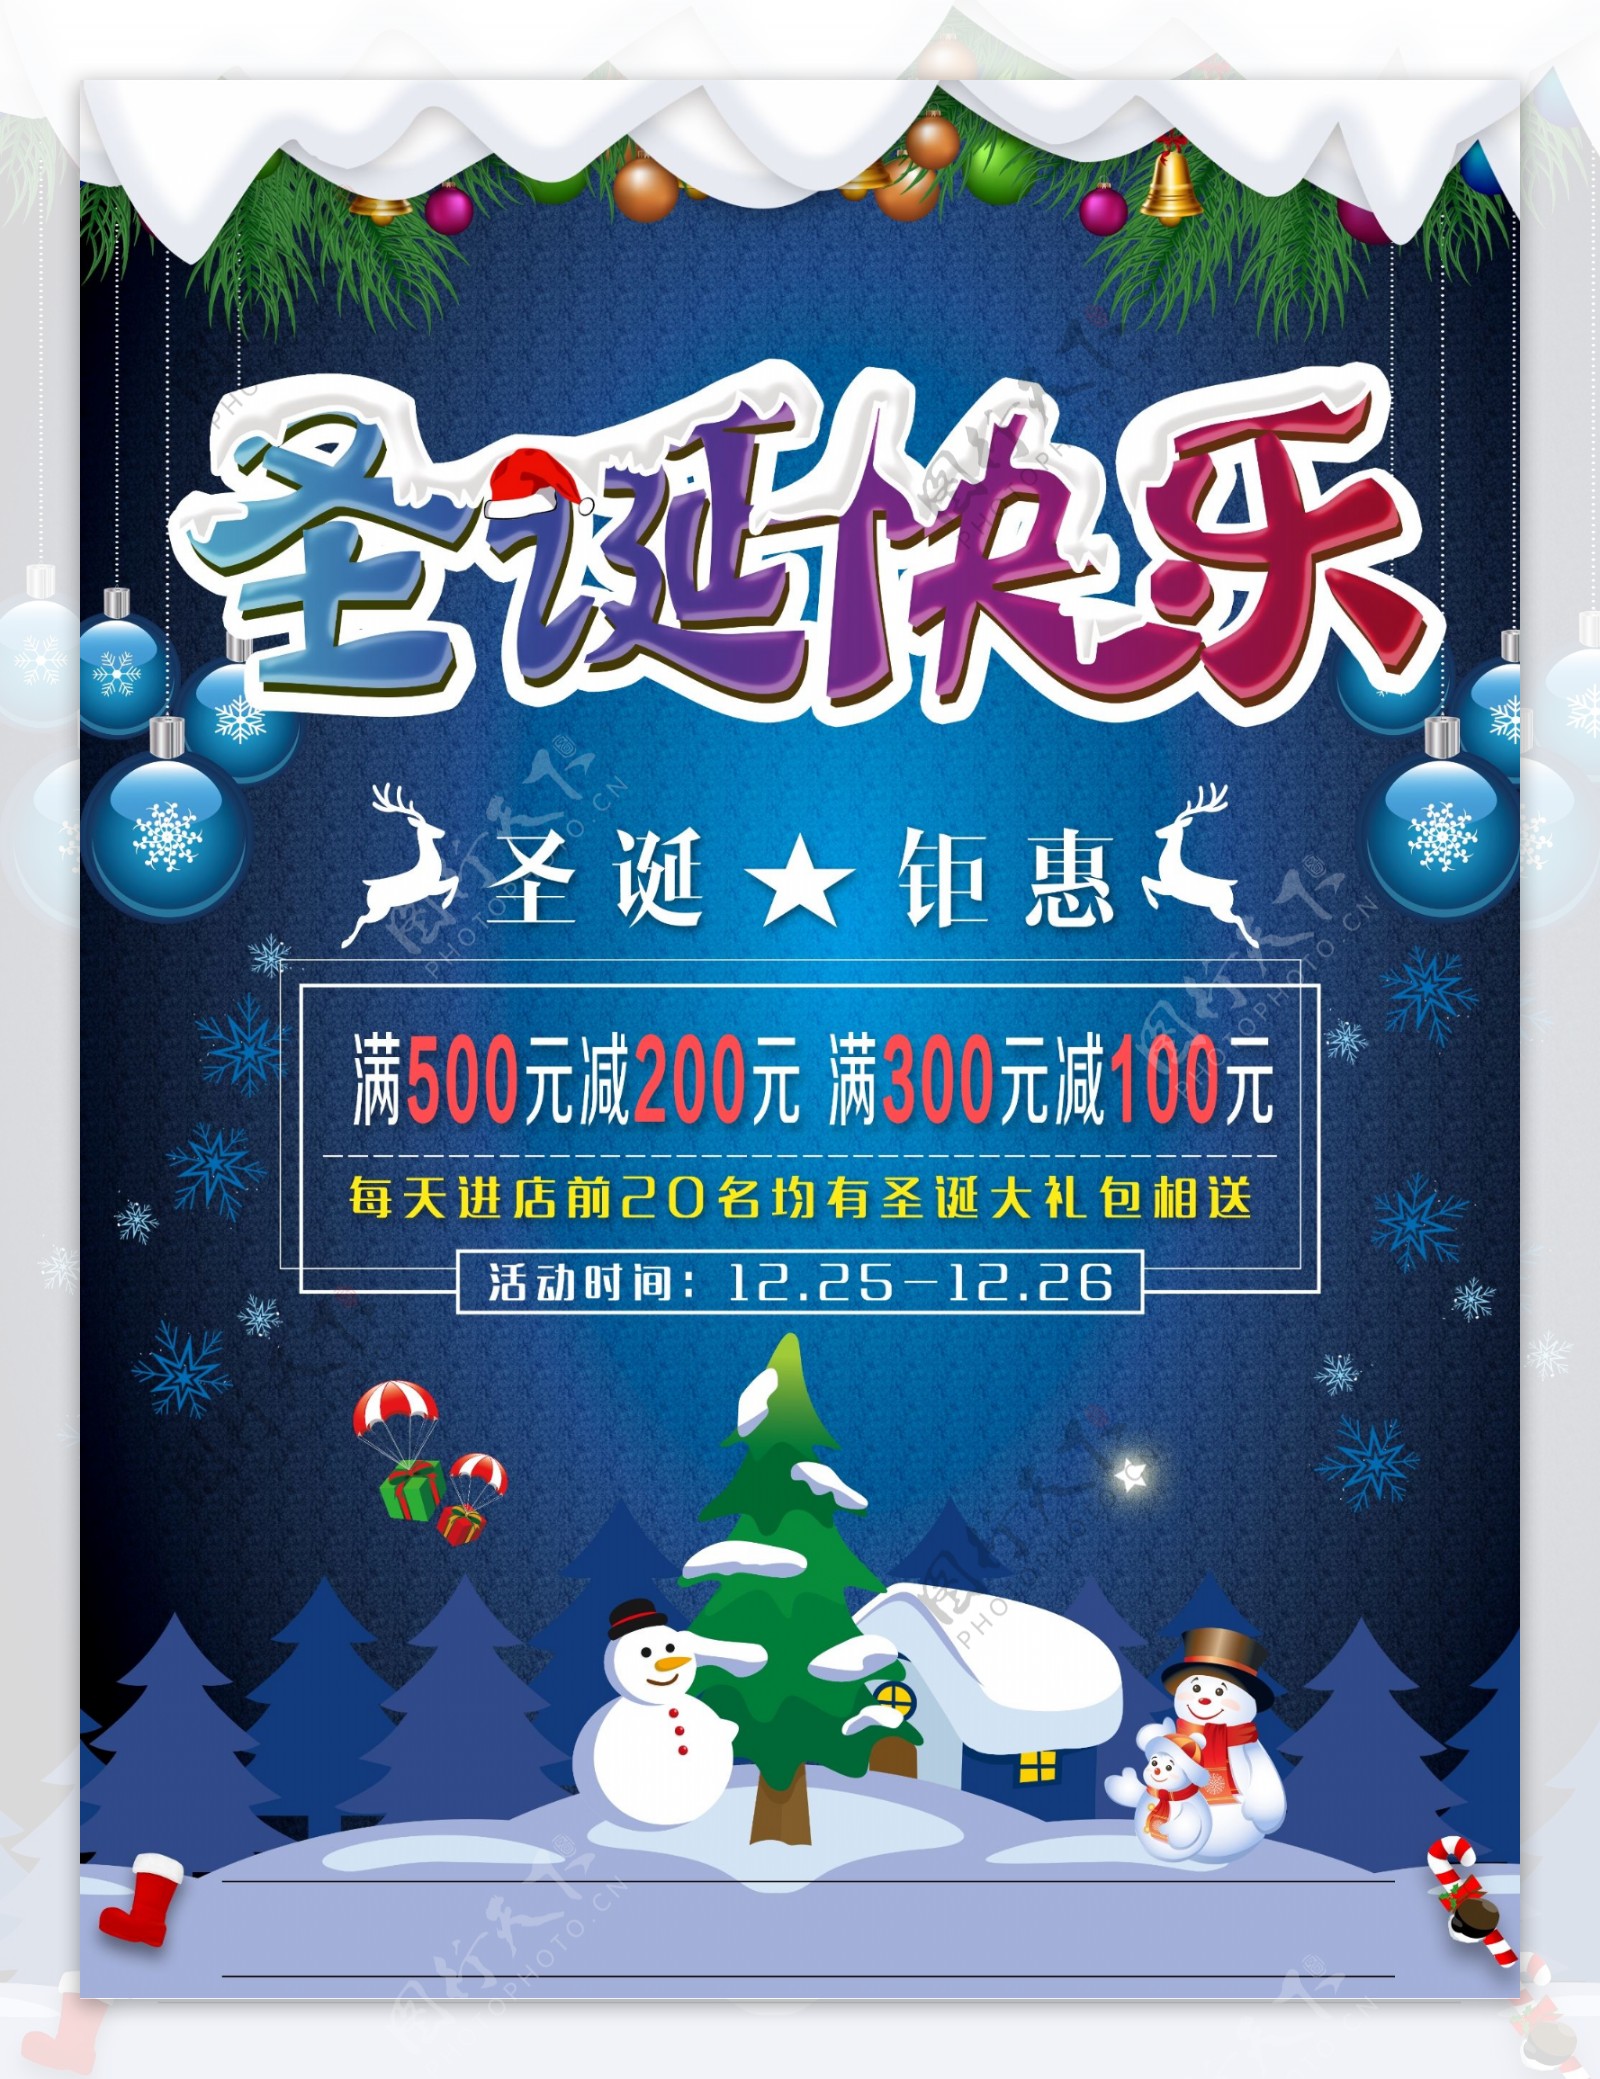 蓝色渐变背景圣诞节促销宣传海报